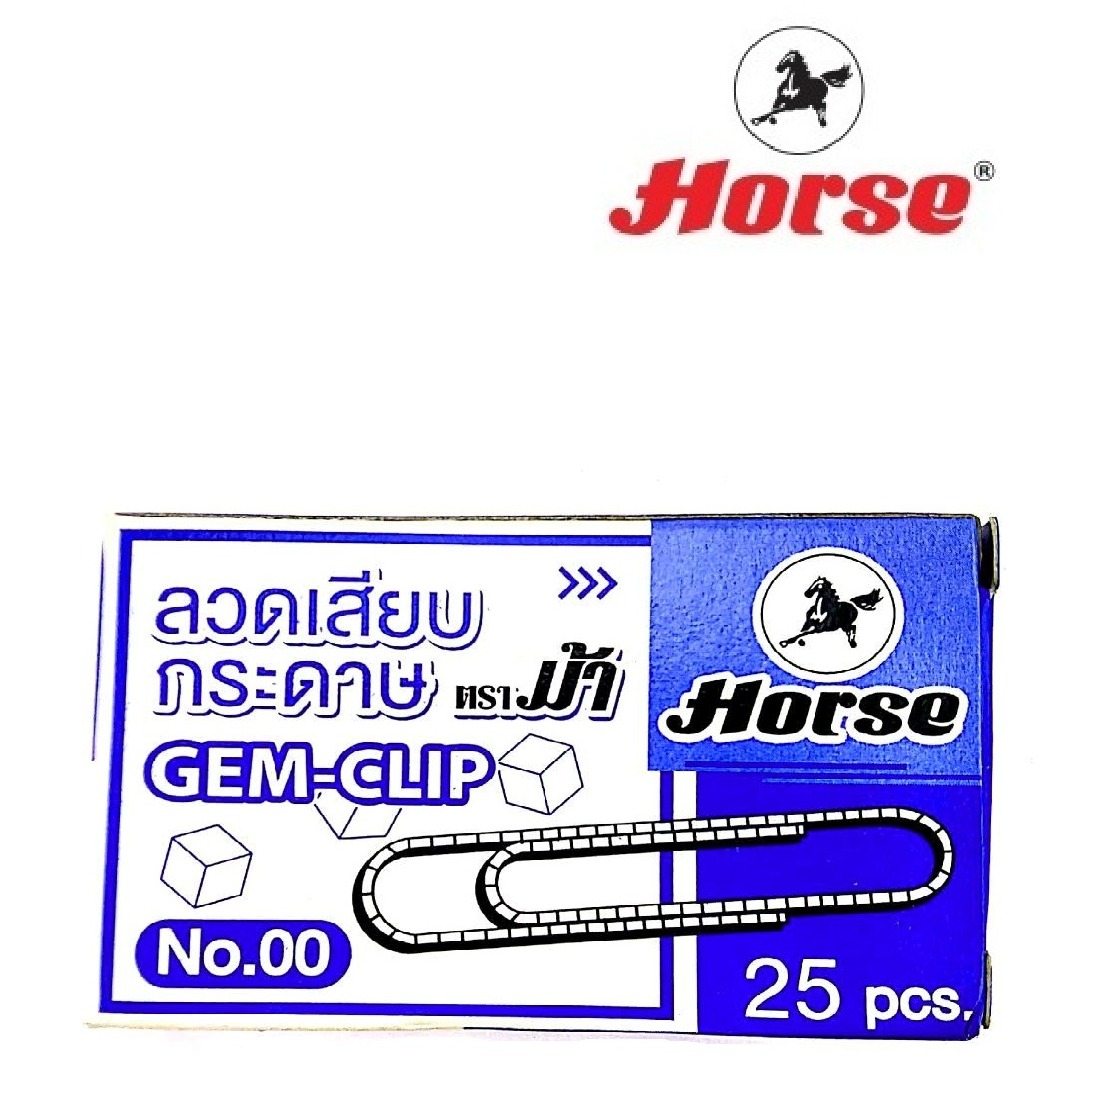 HORSE ตราม้า ลวดเสียบกระดาษหัวกลม NO.00 50มม. 25ตัว/กล่อง จำนวน 1 กล่อง